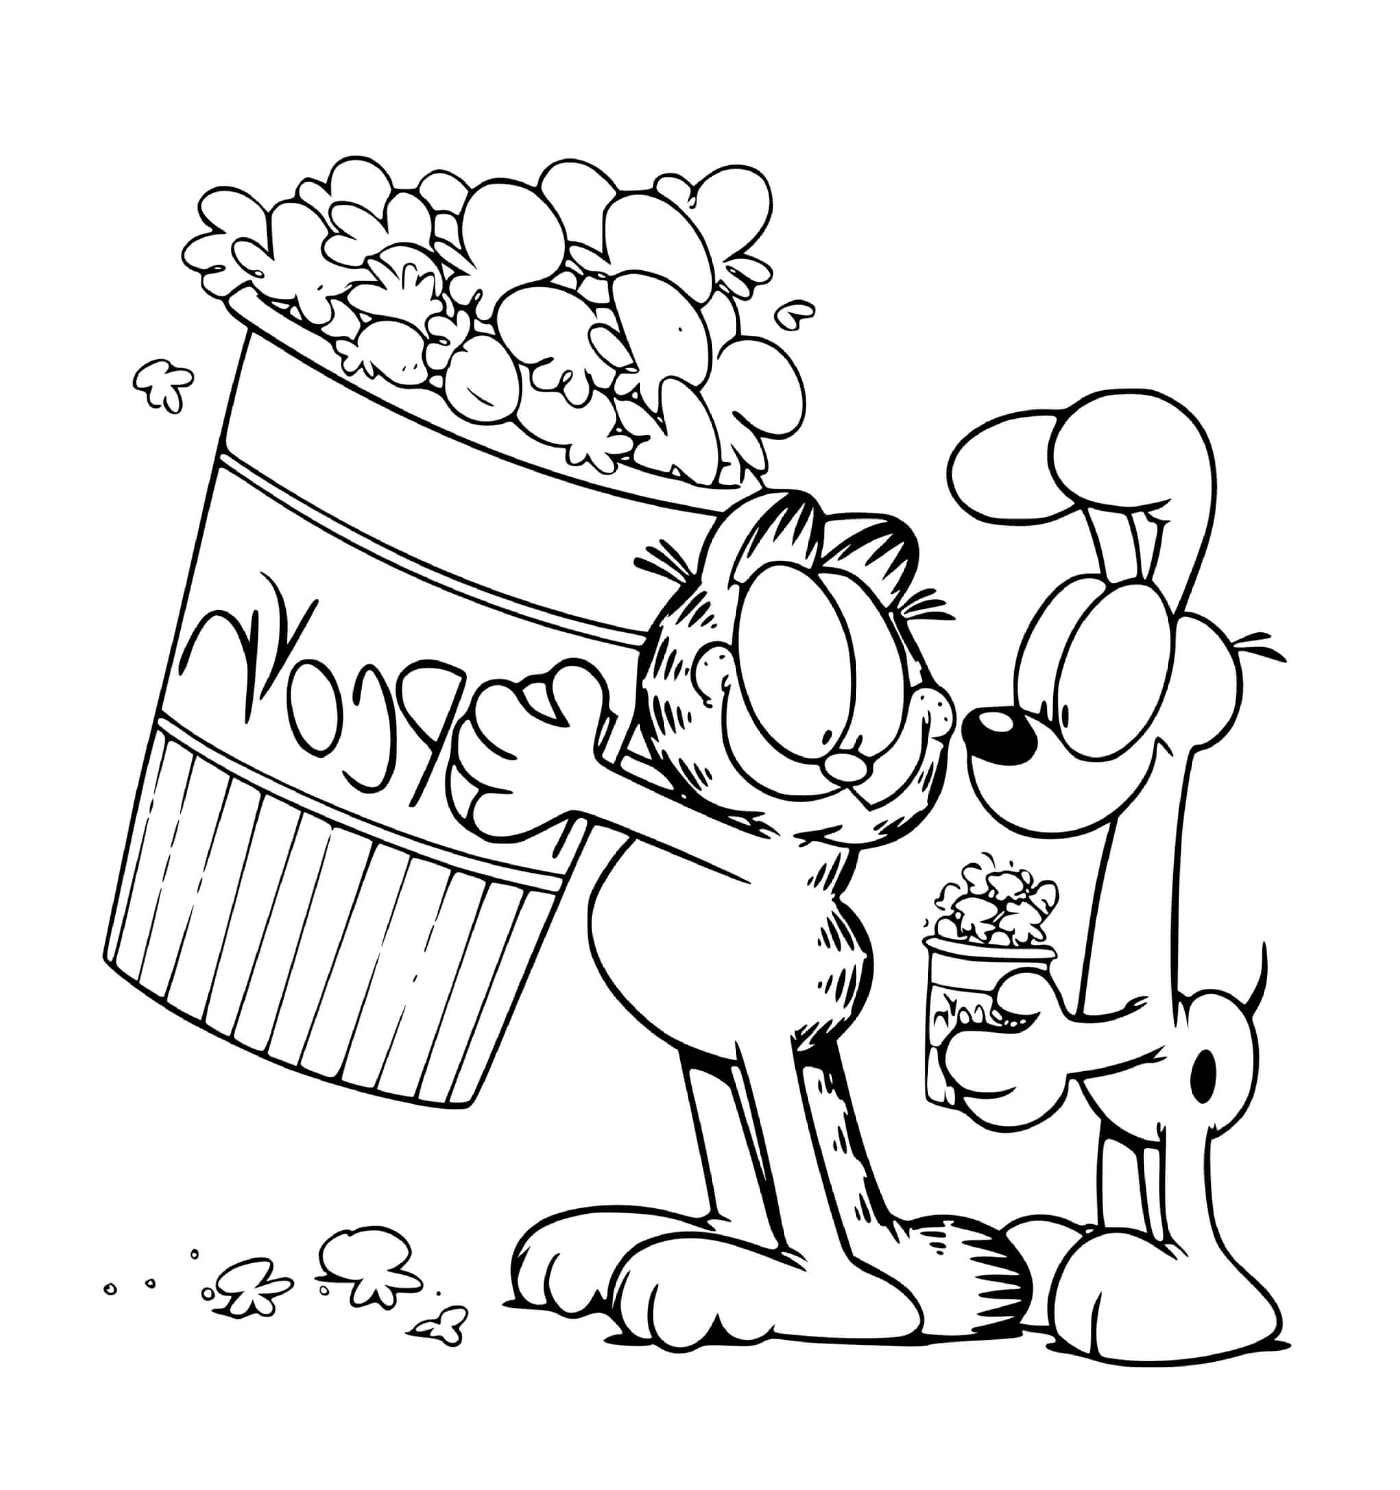  Garfield und Odie teilen Popcorn 